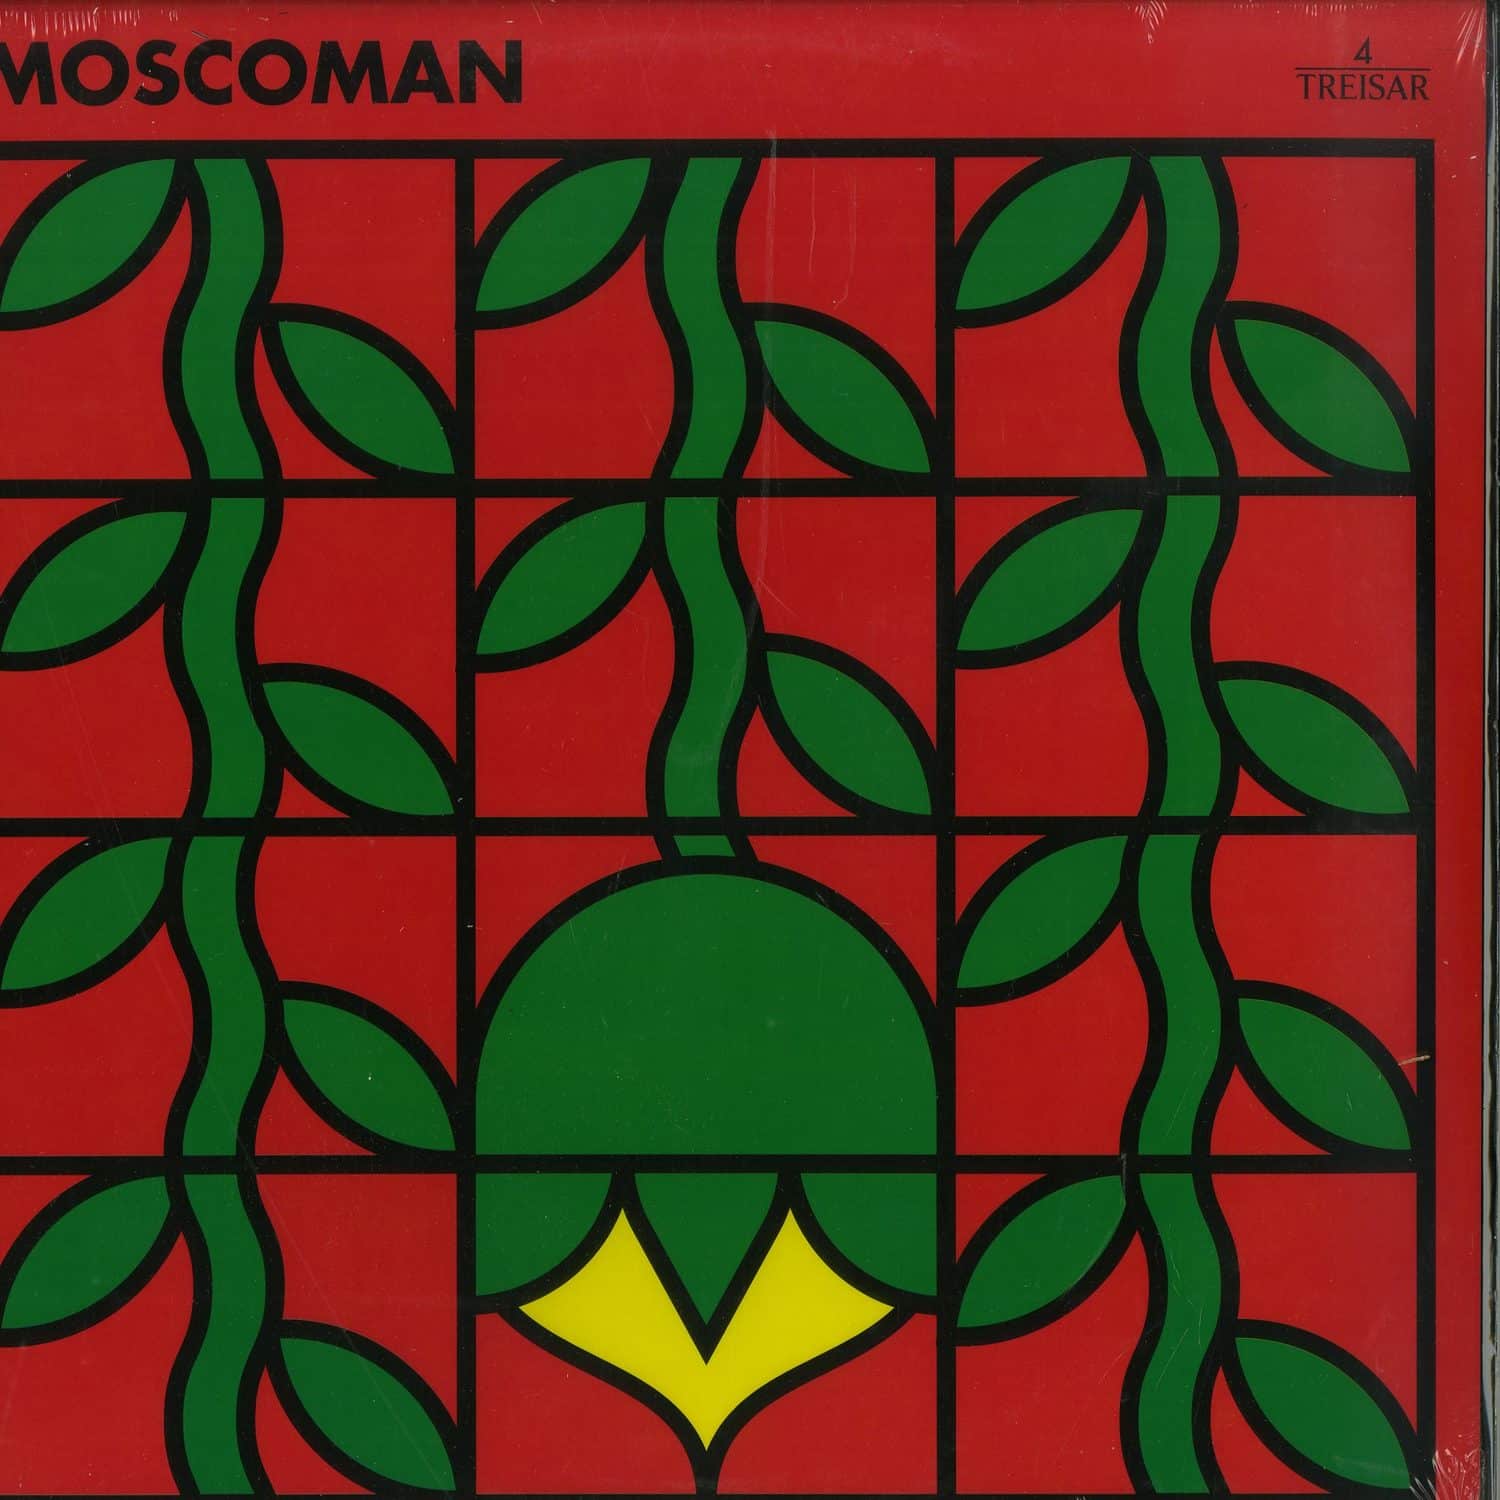 Moscoman - HOT SALT BEEF